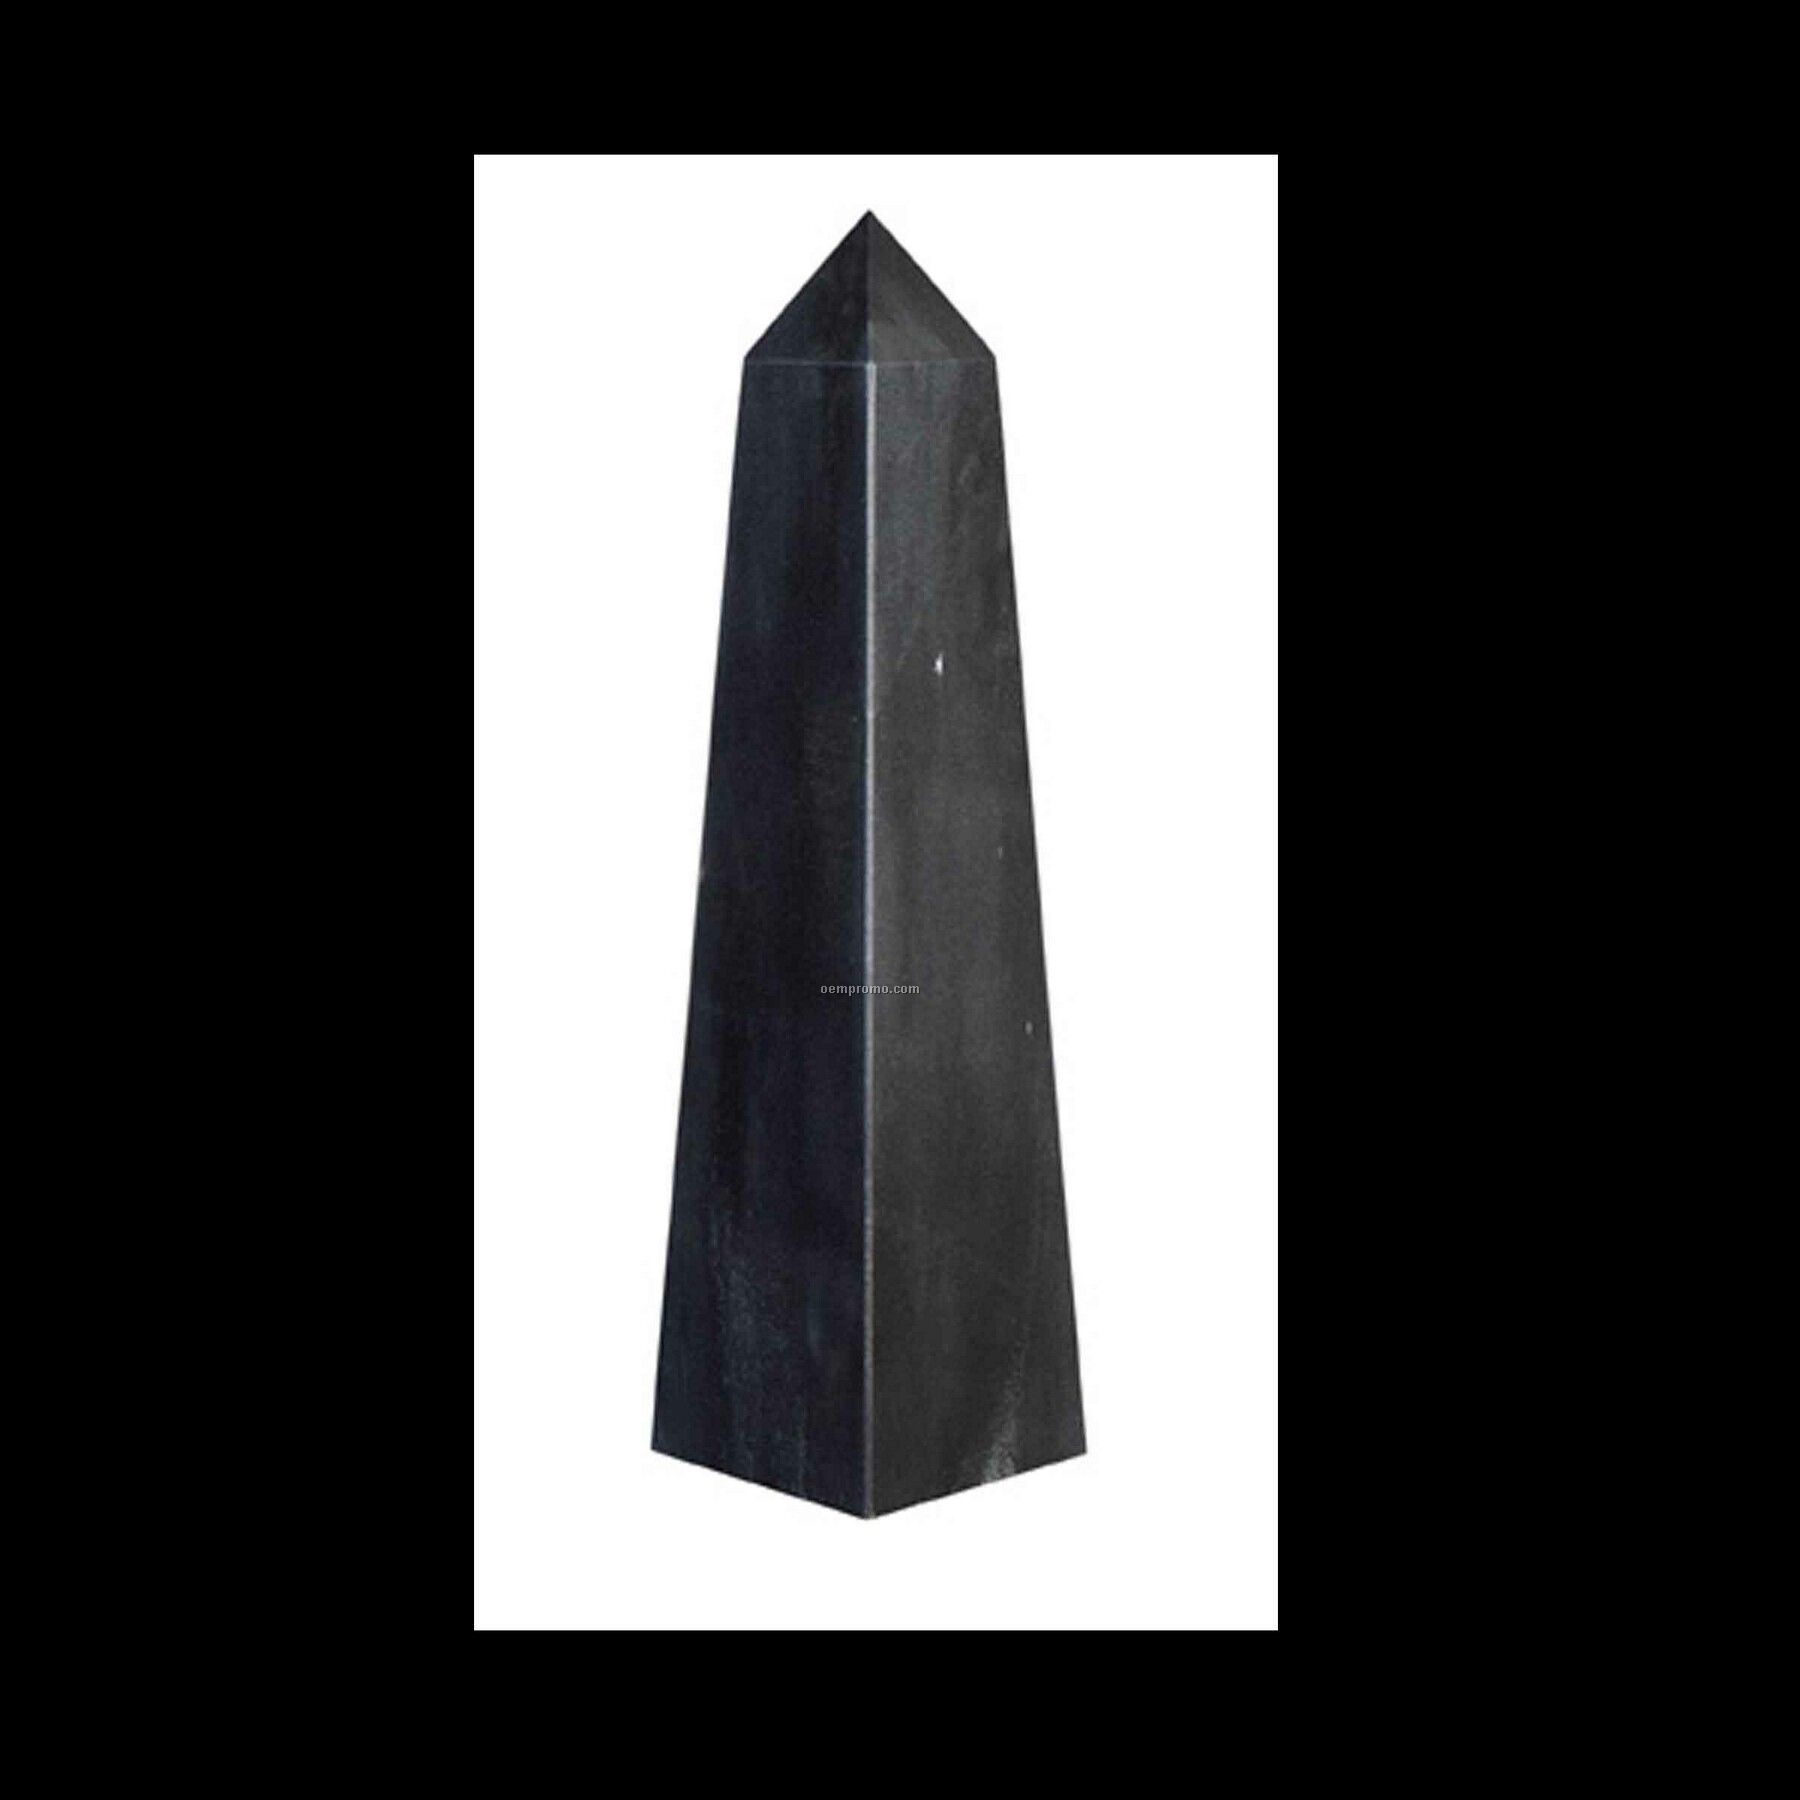 Large Obelisk Pinnacle Award